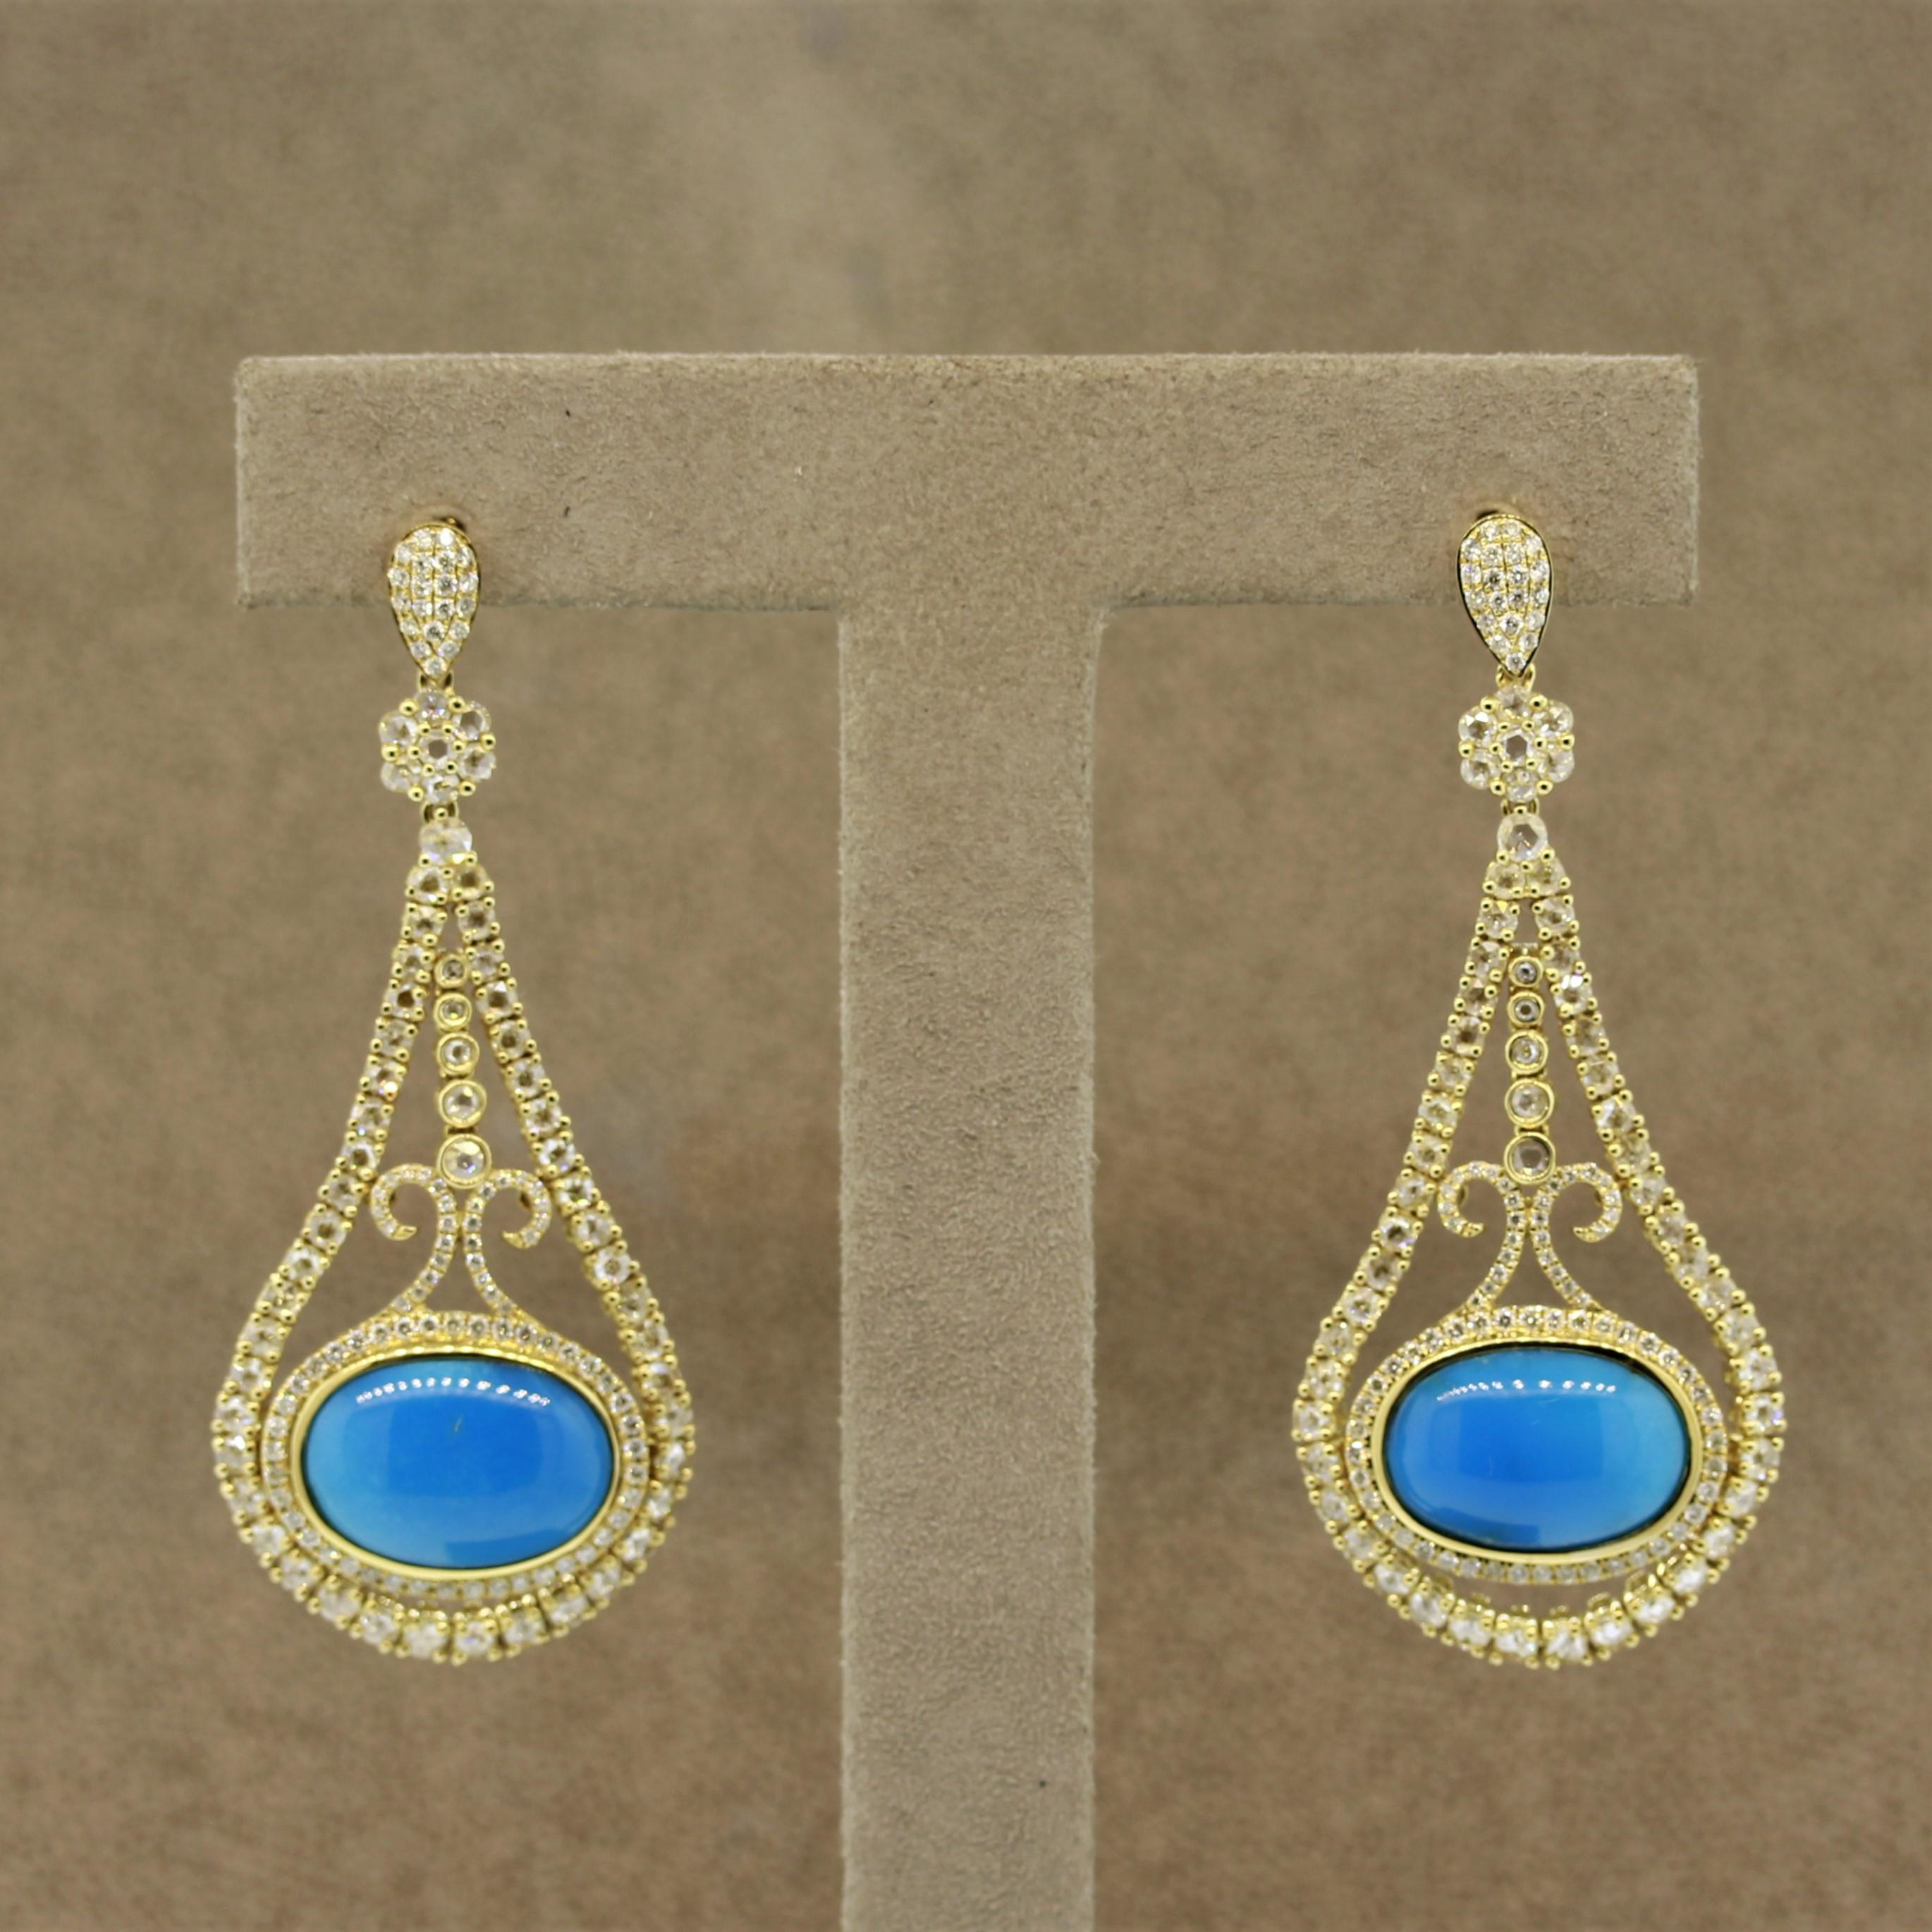 Ein hübsches Paar Diamantohrringe mit 2 Stück Türkis mit einer schönen gleichmäßigen blauen Farbe, die insgesamt 14,40 Karat wiegen. Vervollständigt werden sie durch 3,49 Karat Diamanten, die sowohl im Rosenschliff als auch mit runden Brillanten